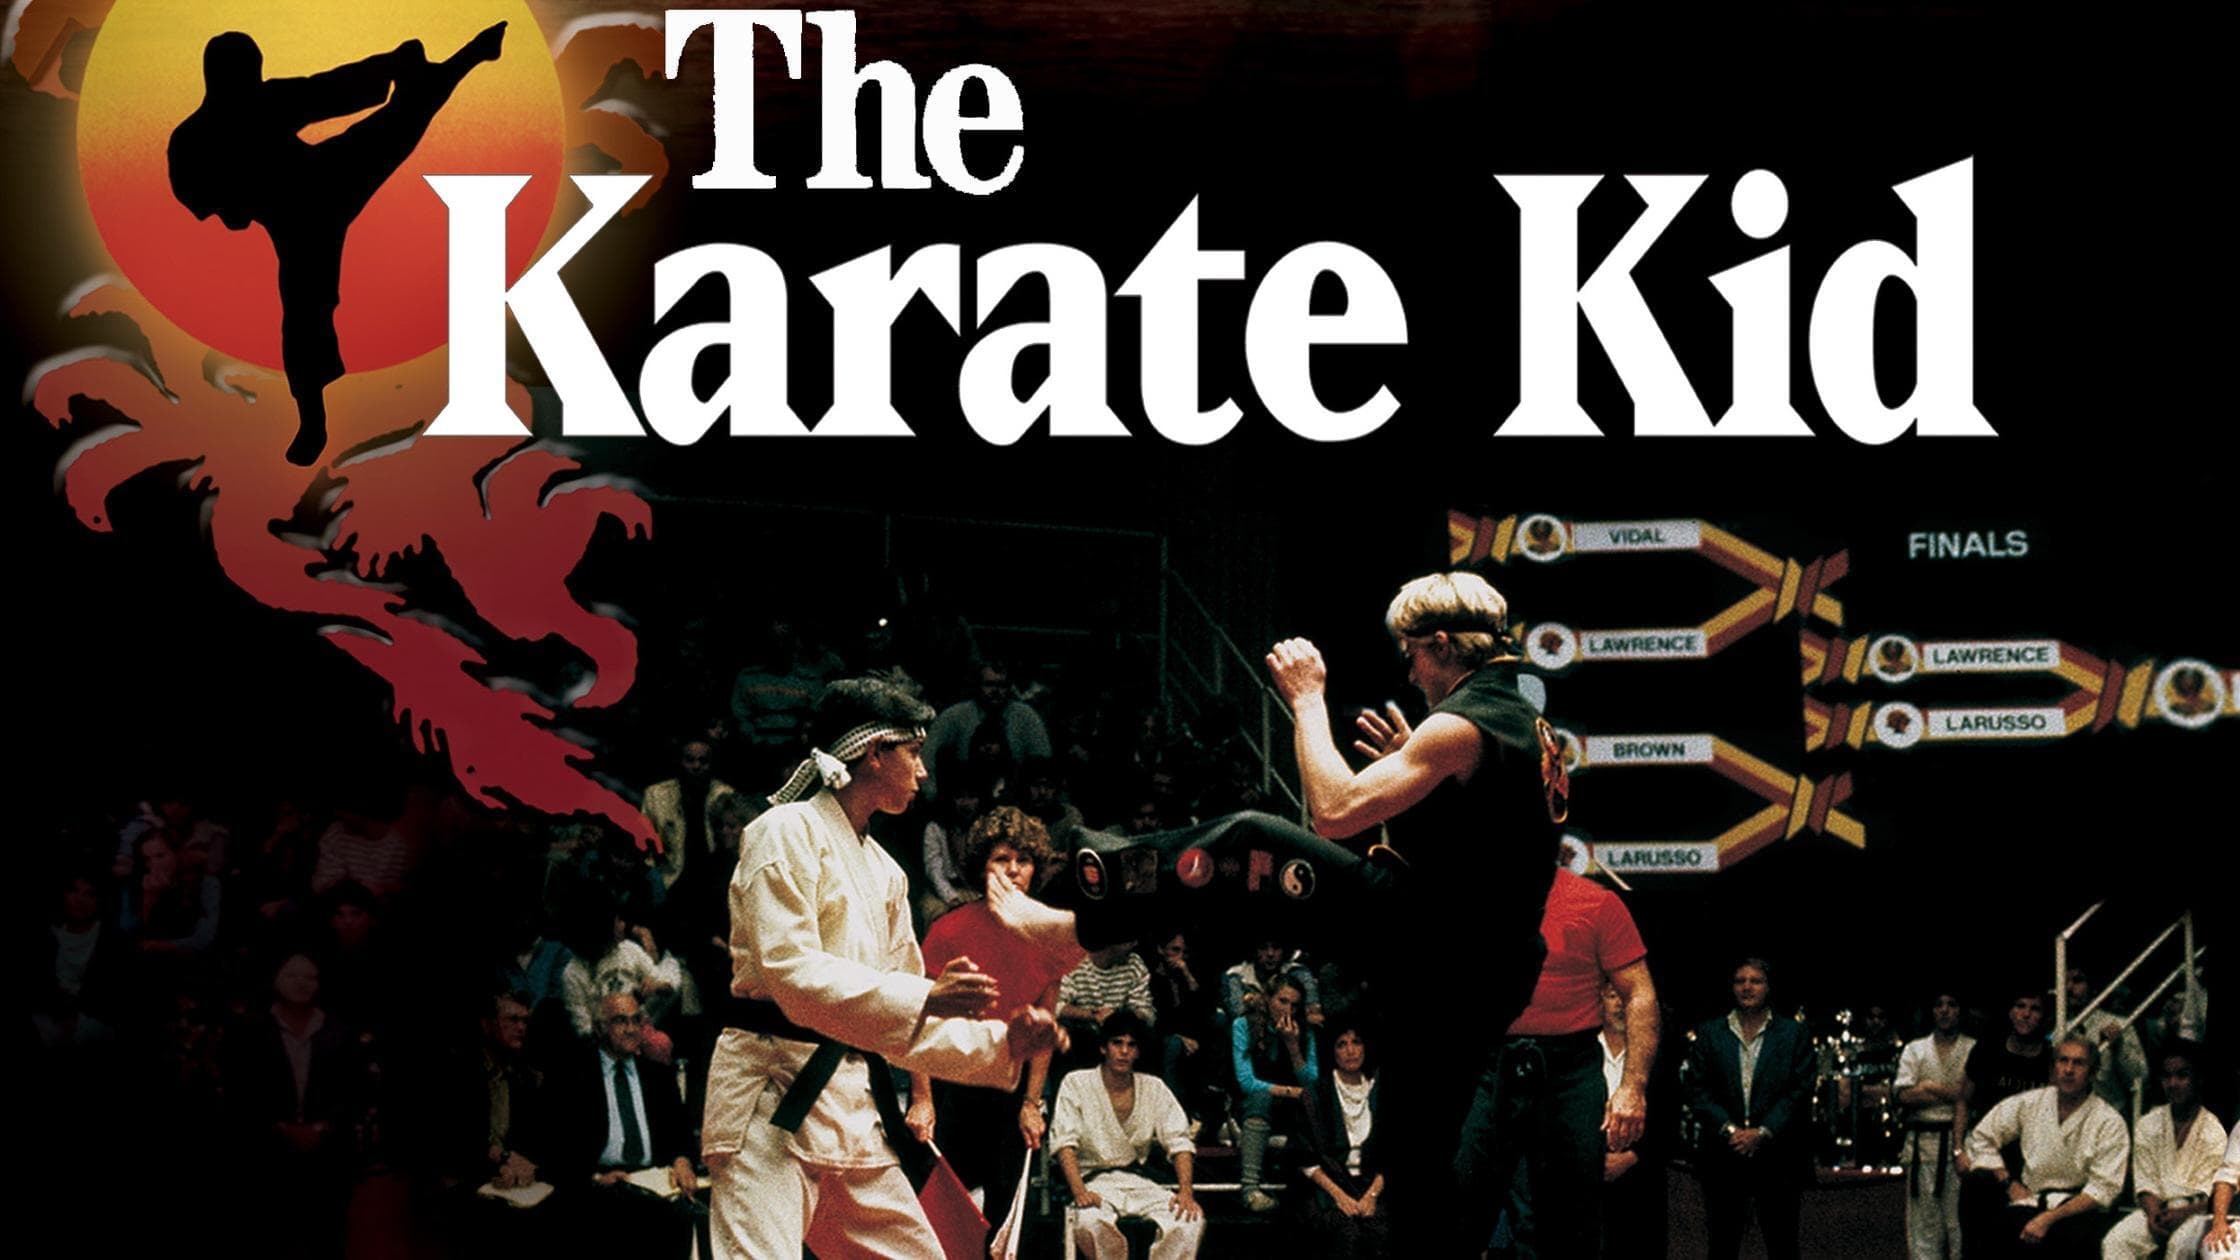 Per vincere domani - The Karate Kid